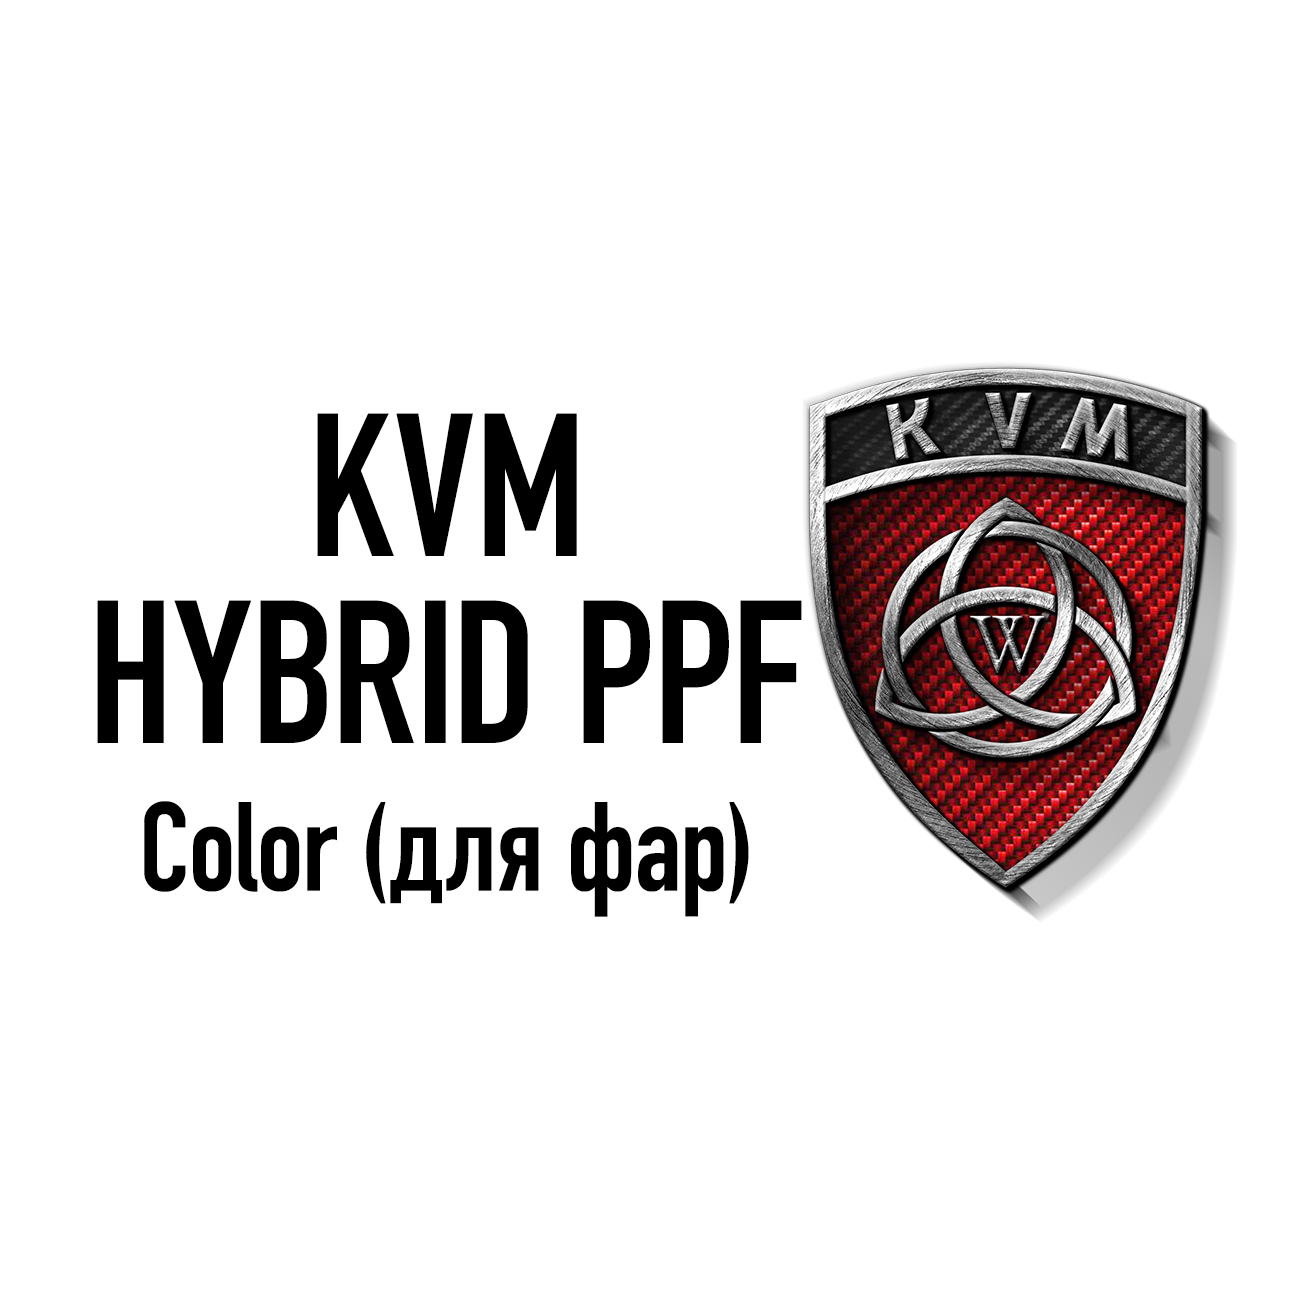 KVM HYBRID PPF Color